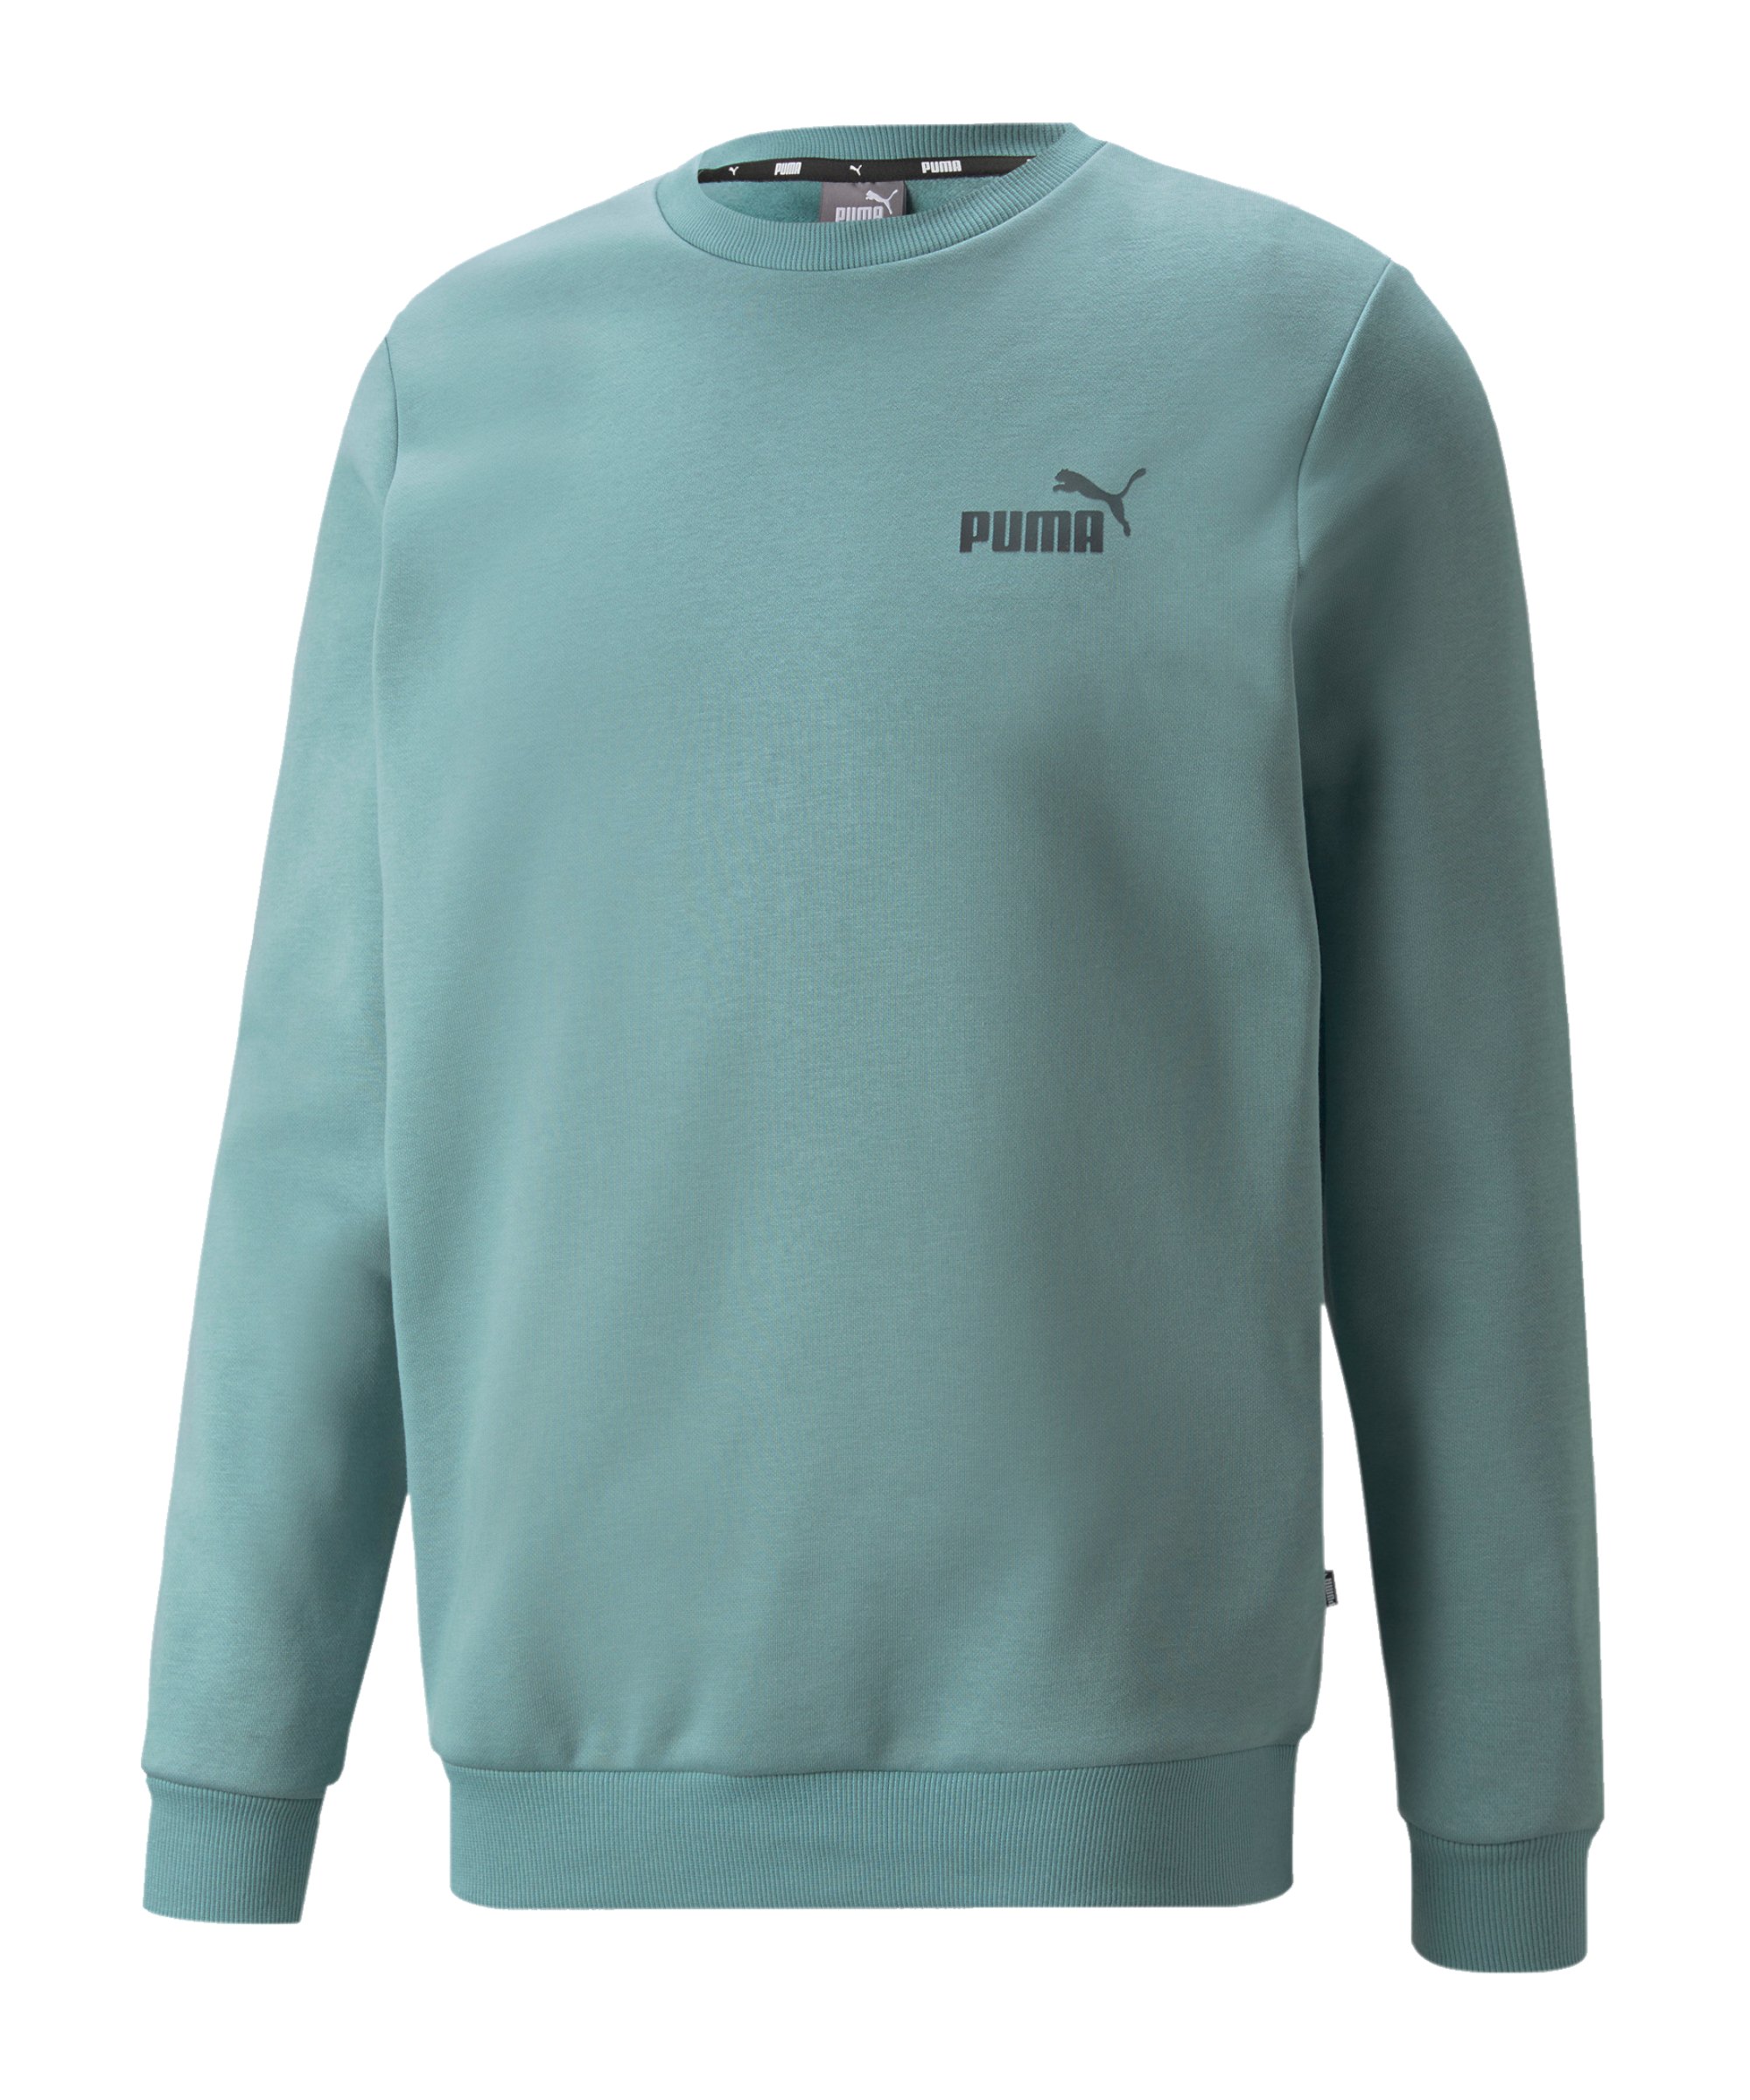 PUMA Essentials Small Logo Sweatshirt Blau F50 - blau